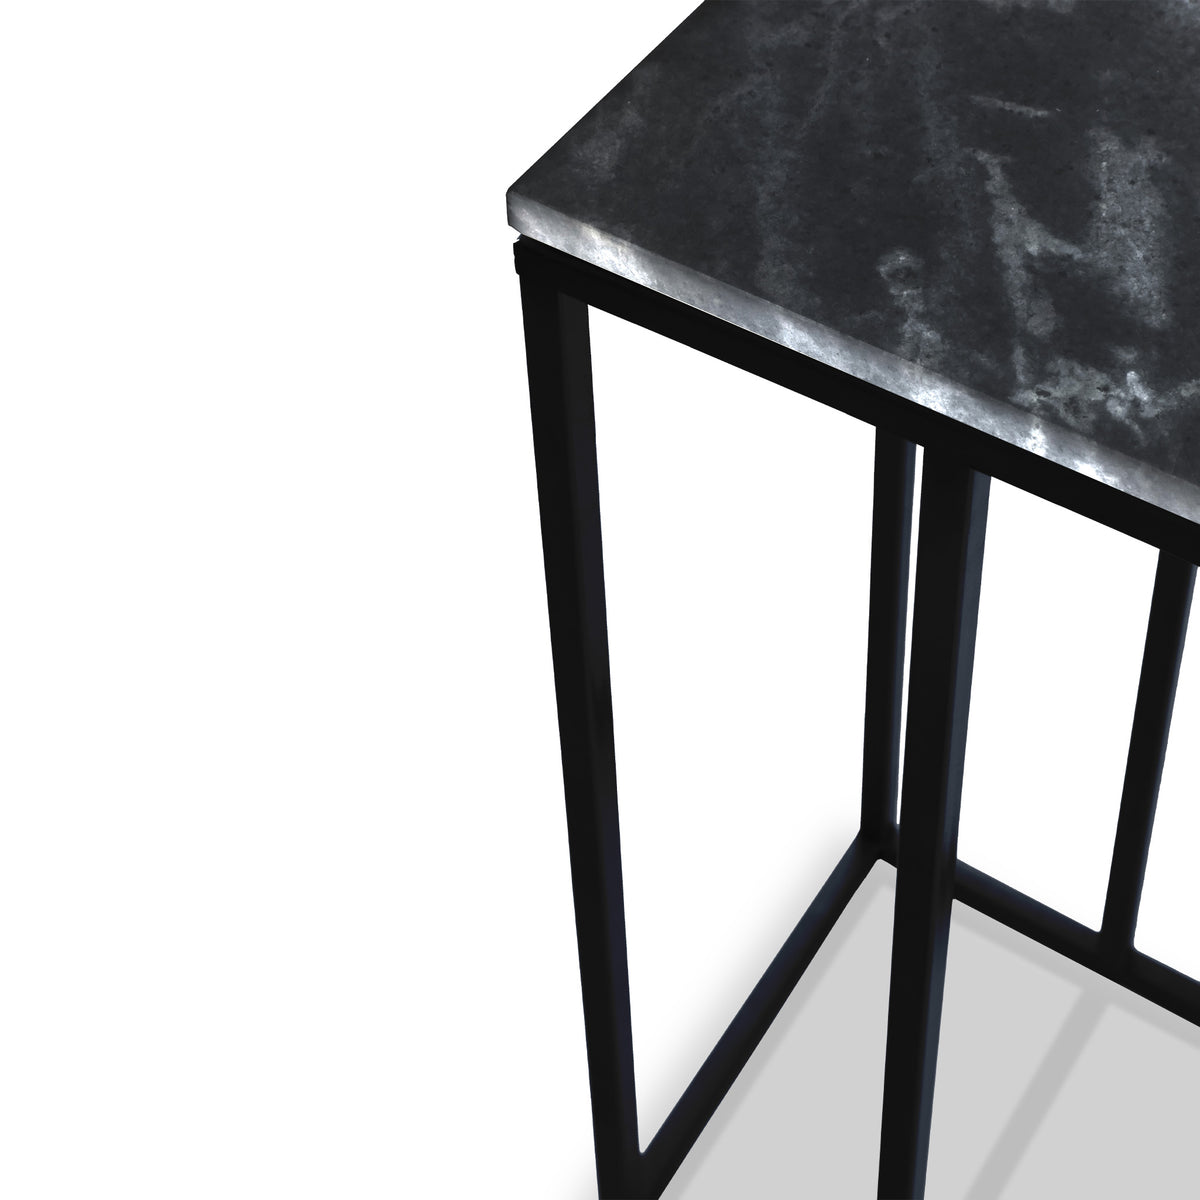 Elissa Black Marble Side Table with Black Leg